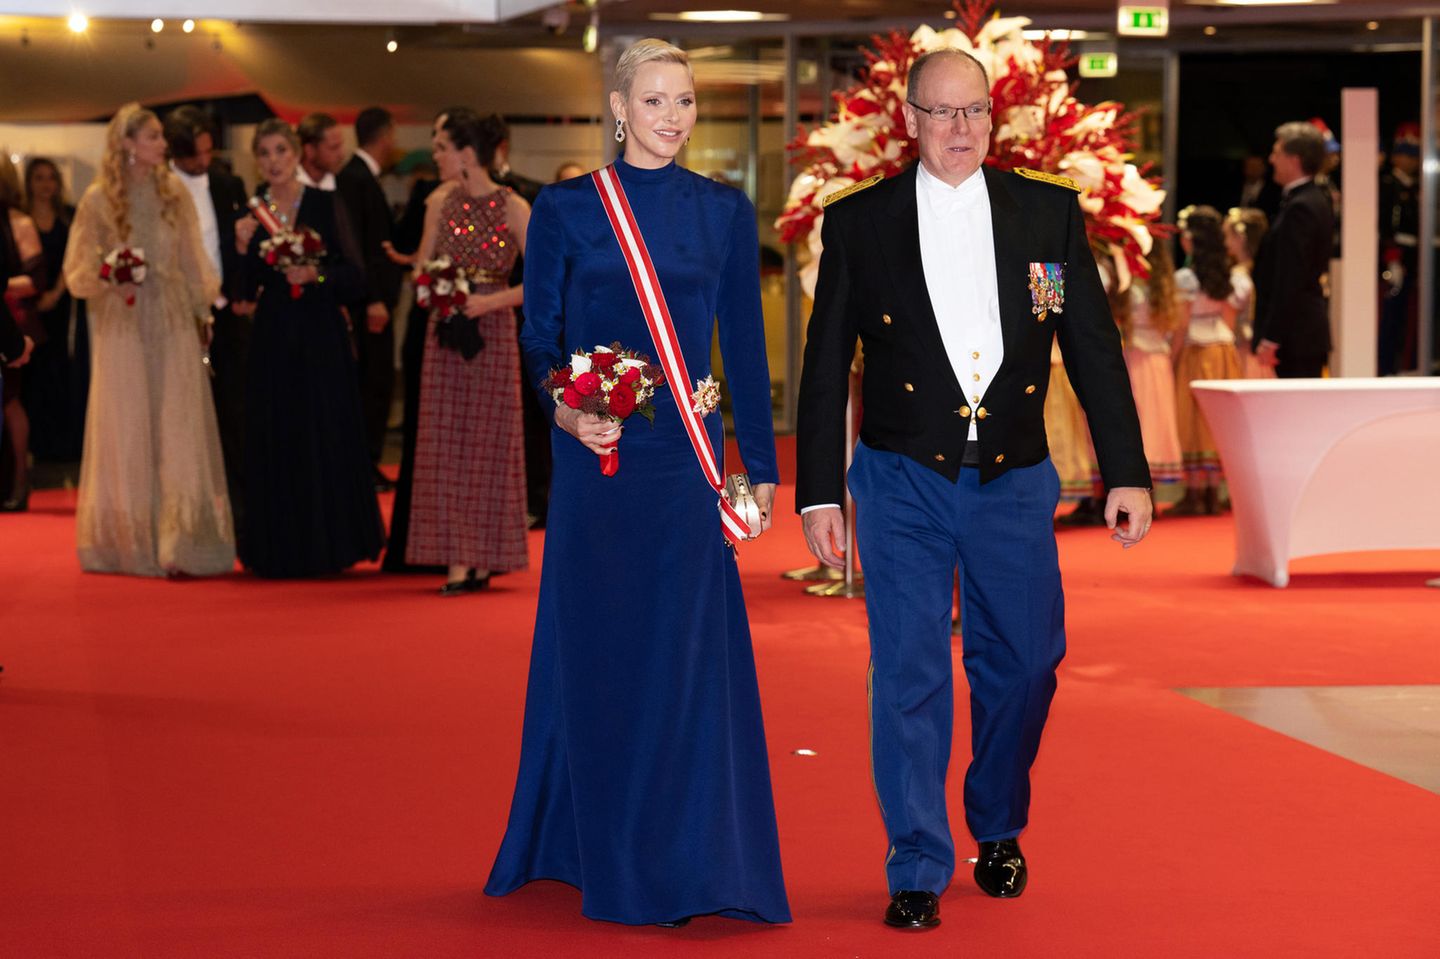 Am Abend bei der traditionellen Gala im Grimaldi Forum ist die Laune des Fürstenpaar immer noch freudig und ausgelassen, sogar ihre Abendkleidung haben sie farblich aufeinander abgestimmt.